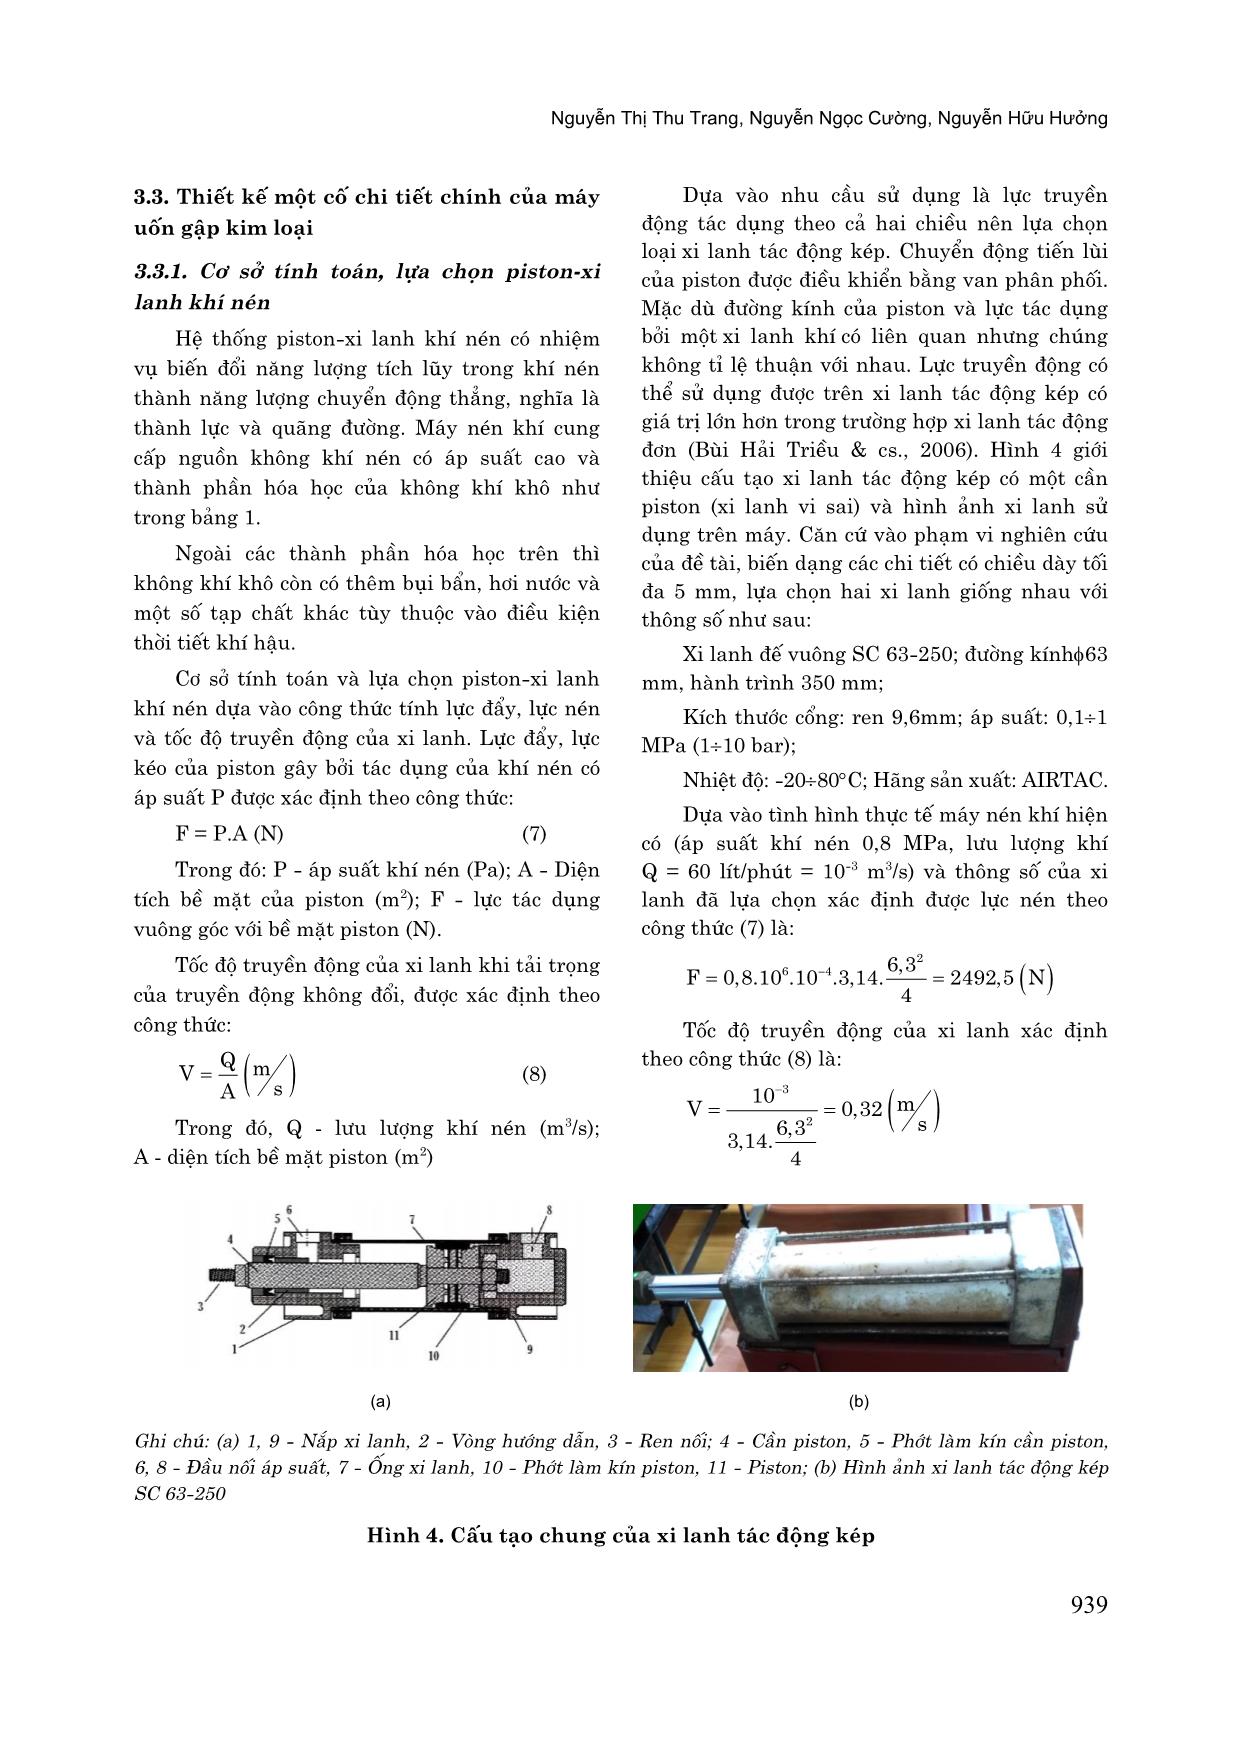 Thiết kế và chế tạo một số chi tiết chính của máy uốn gập kim loại trang 5